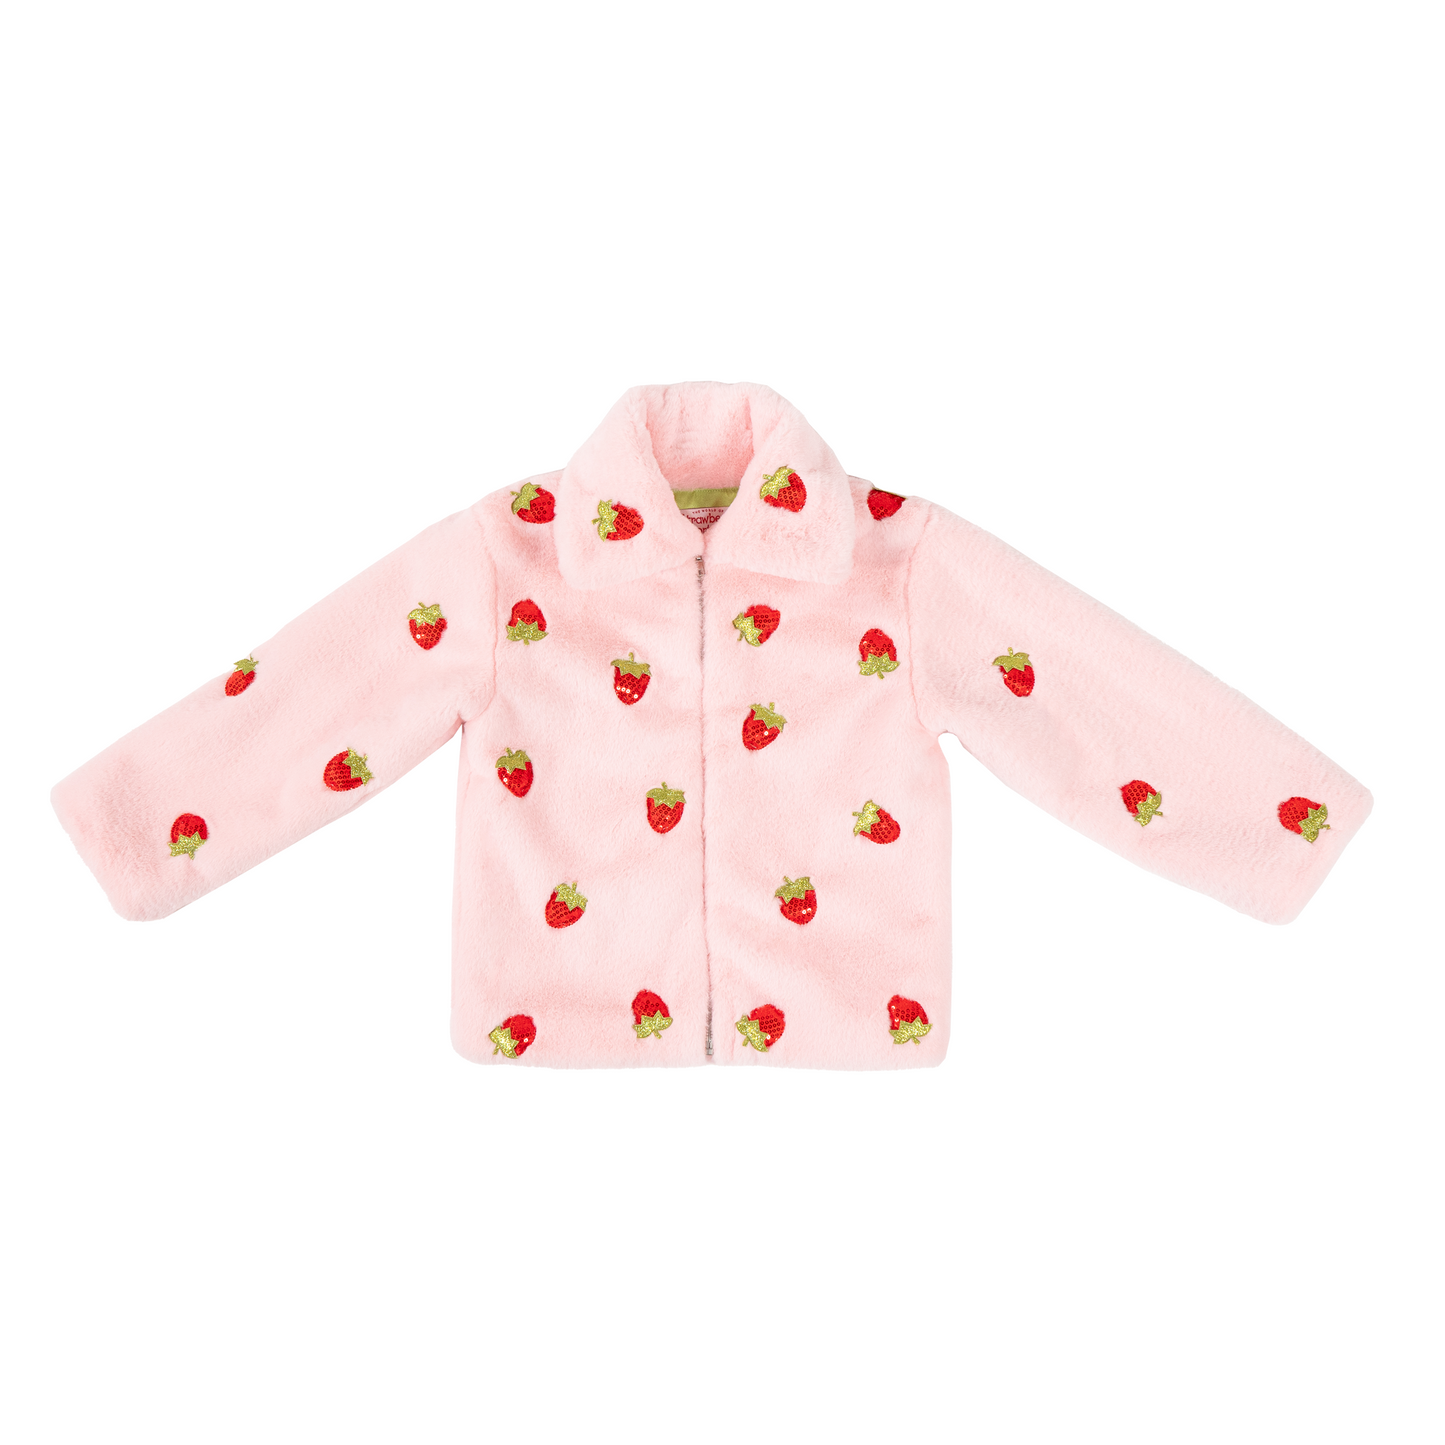 Strawberry Shortcake Premium Child Berry Cuddly Zip-Up Jacket